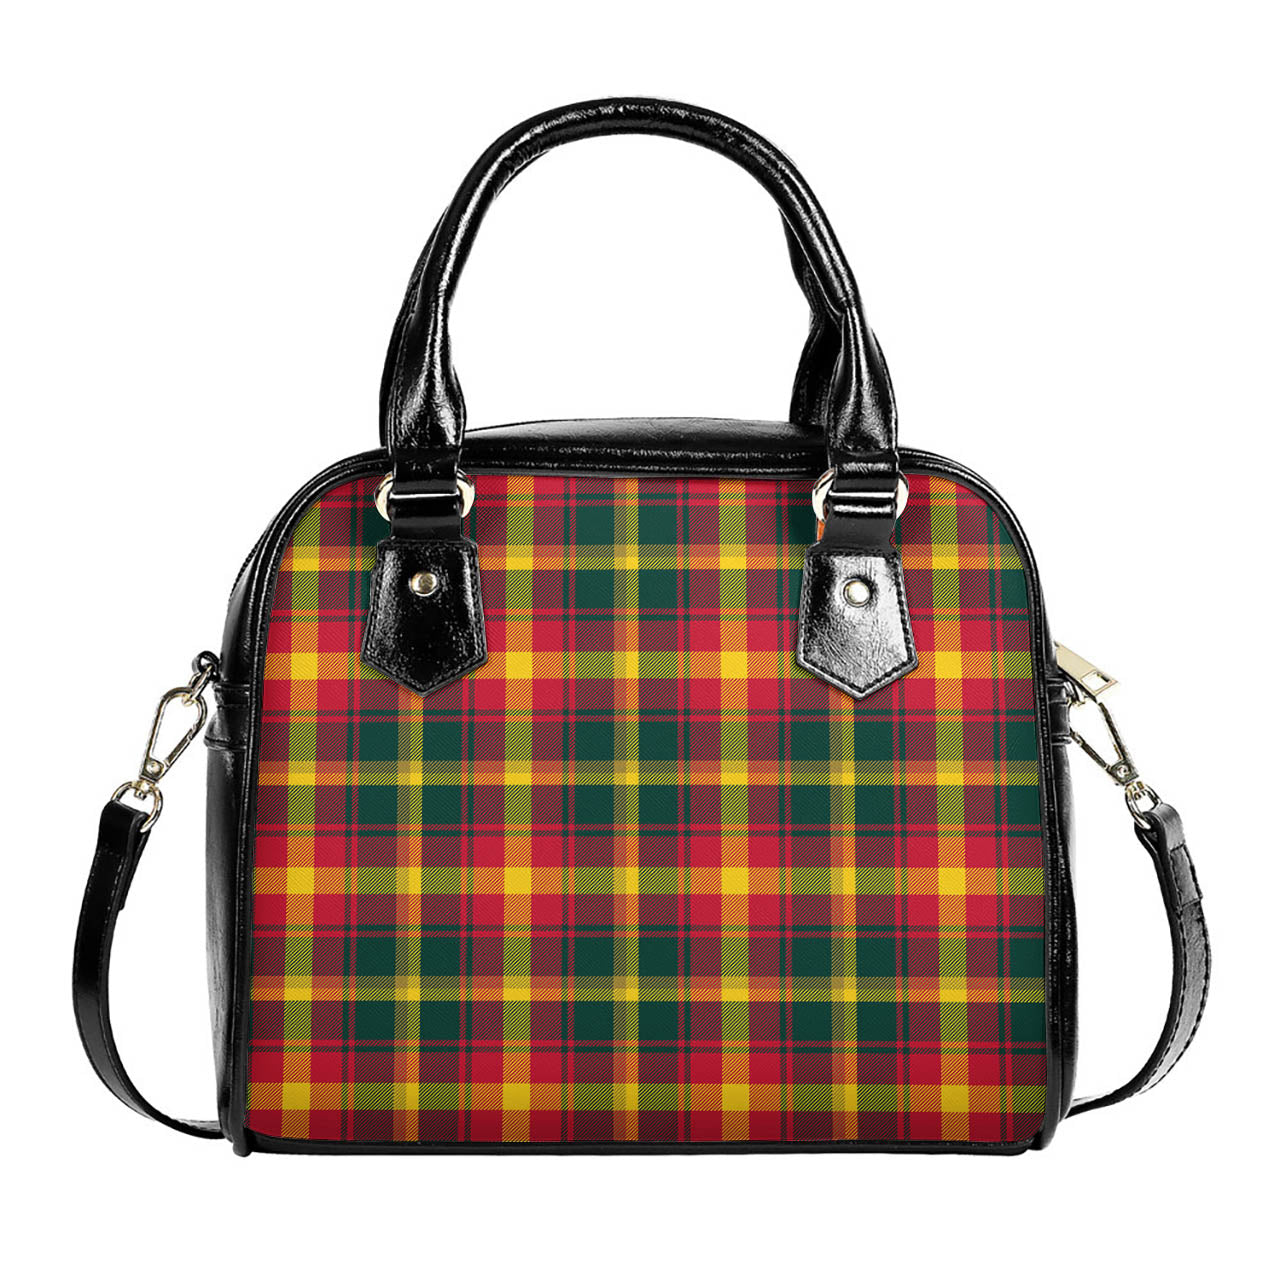 Maple Leaf Canada Tartan Shoulder Handbags One Size 6*25*22 cm - Tartanvibesclothing